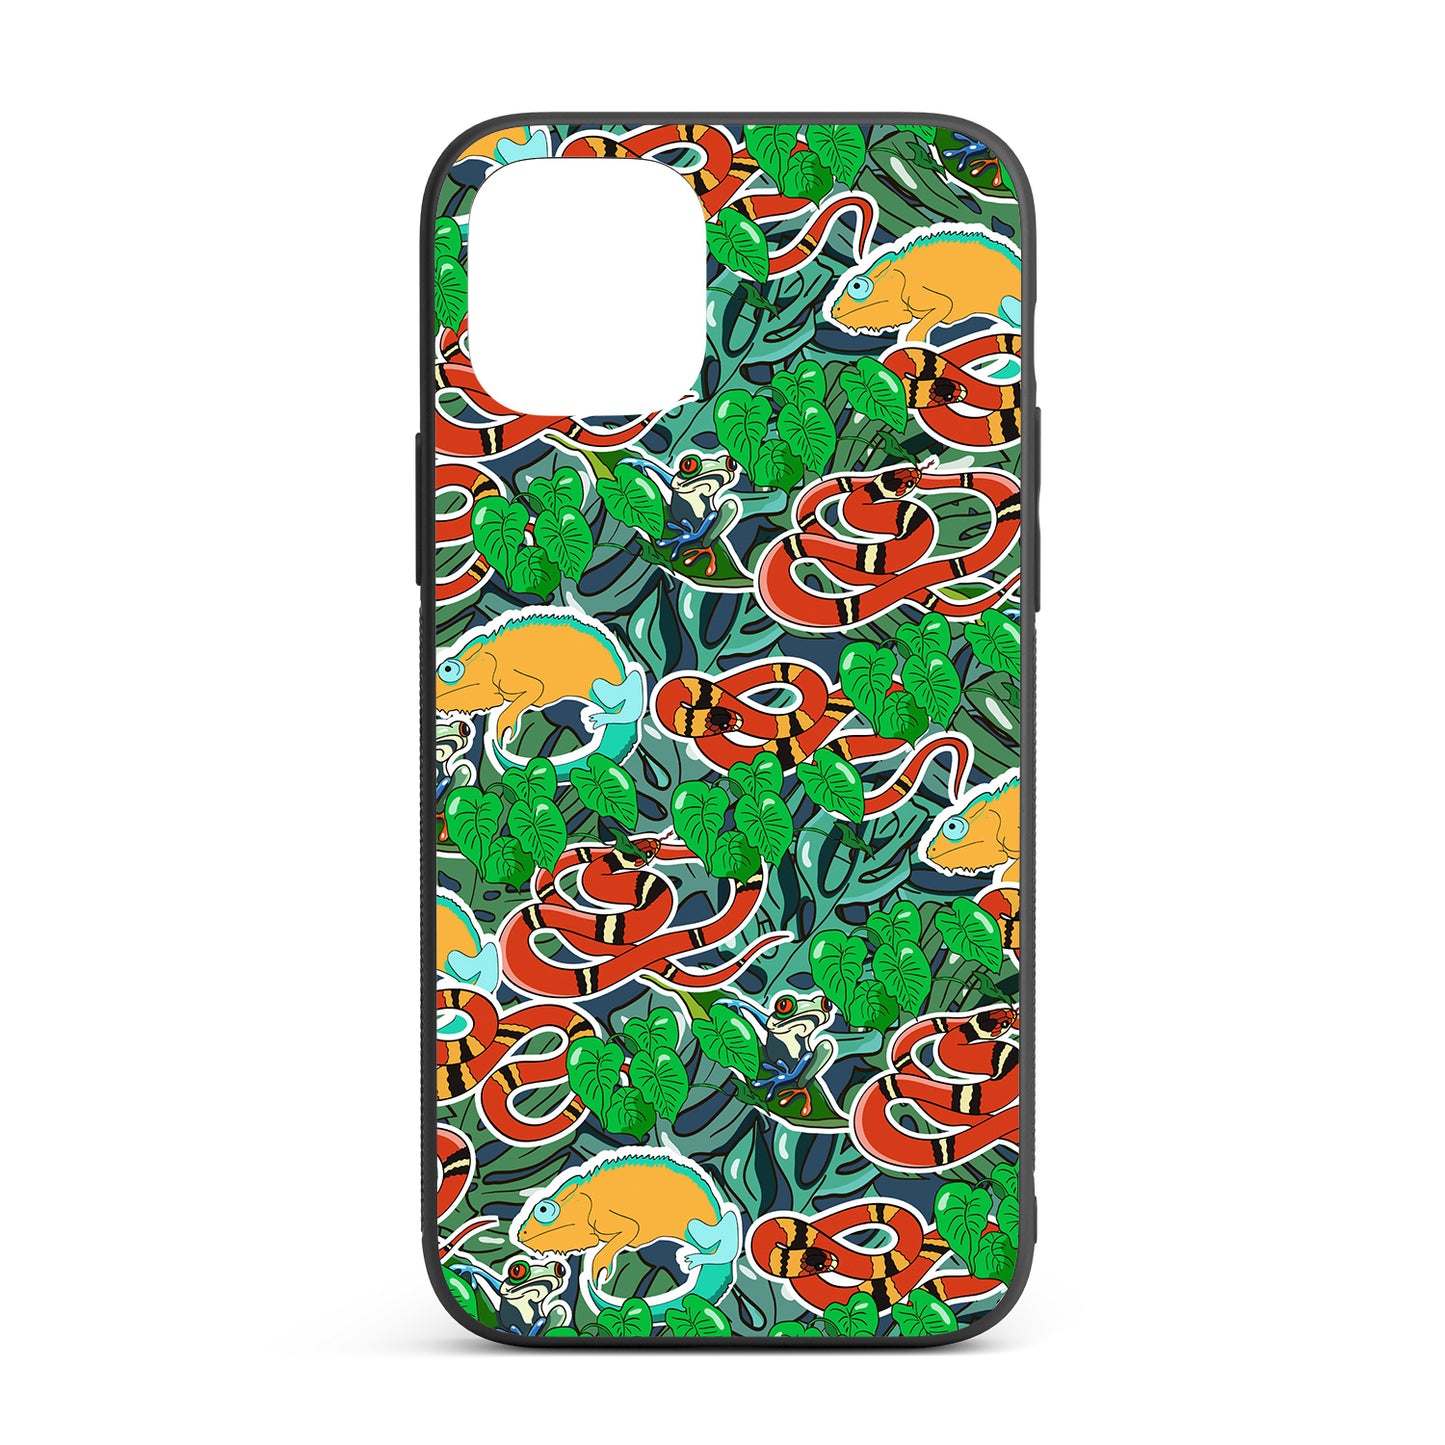 Jungle iPhone glass case